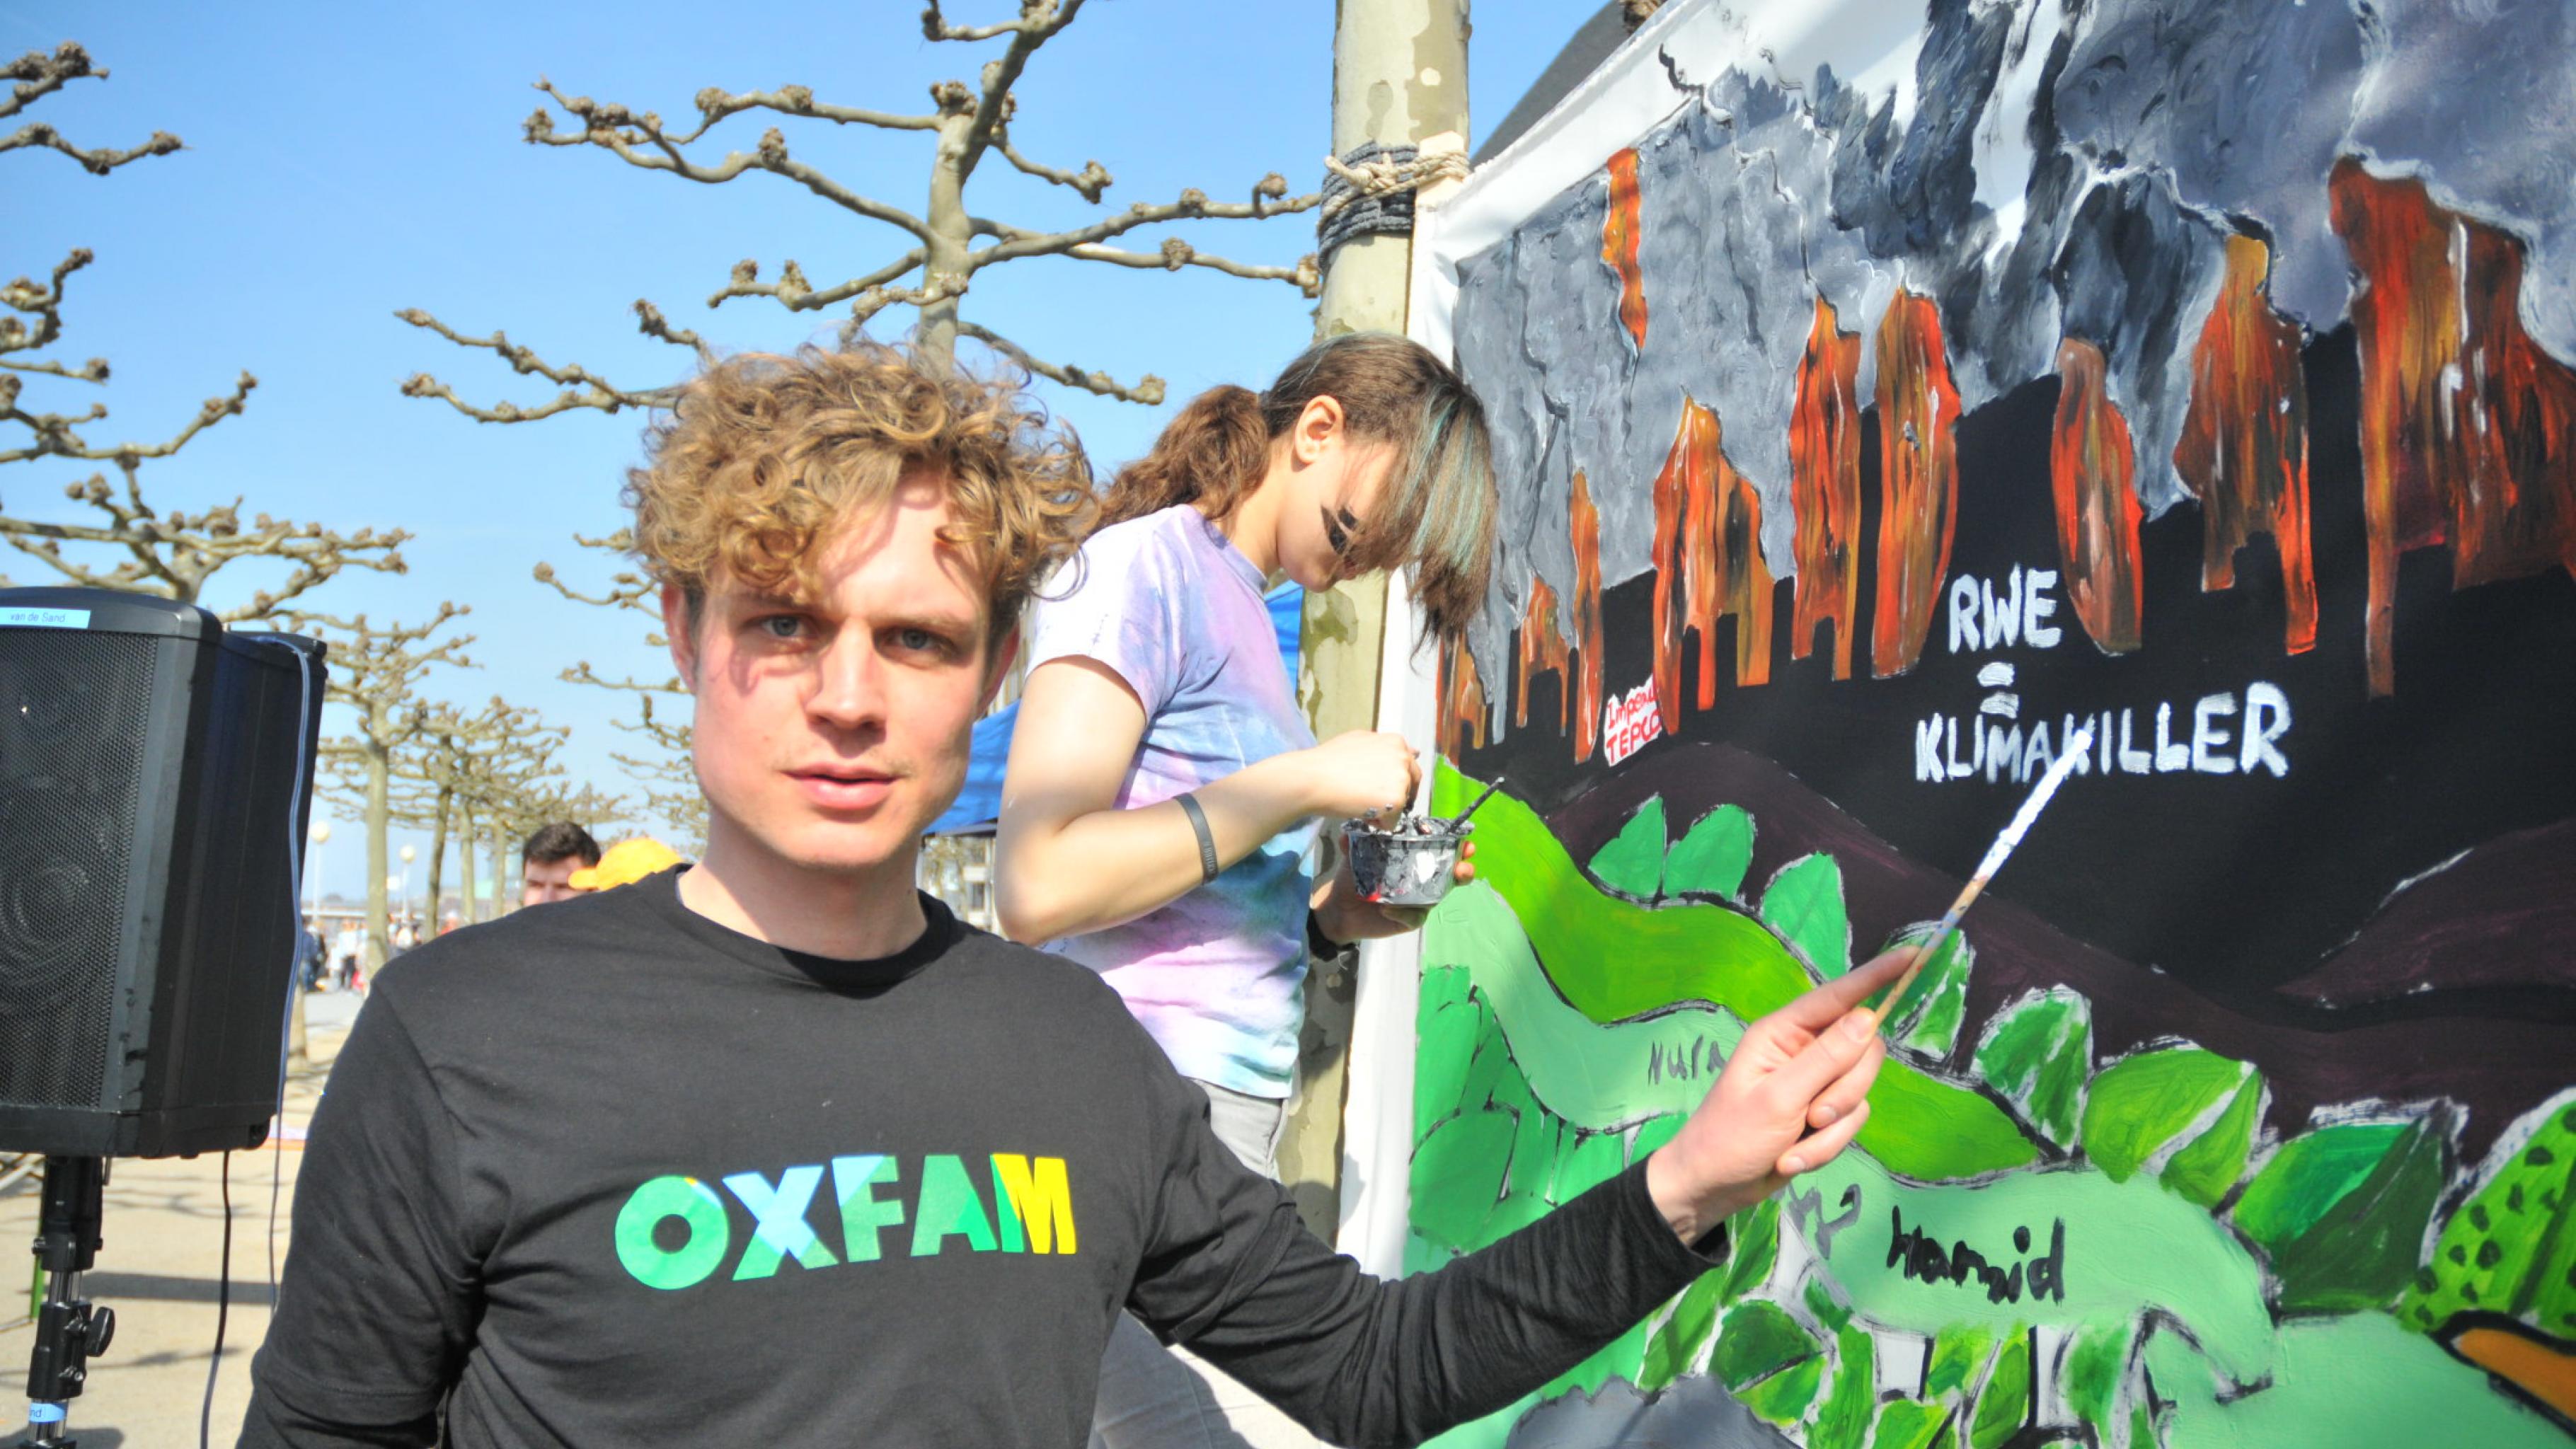 Oxfams Klima-Campaigner Bastian Neuwirth zeigt auf einen Teil des Gemäldes, Kohlekraftwerke mit dem Schriftzug „RWE = Klimakiller“ darstellt.